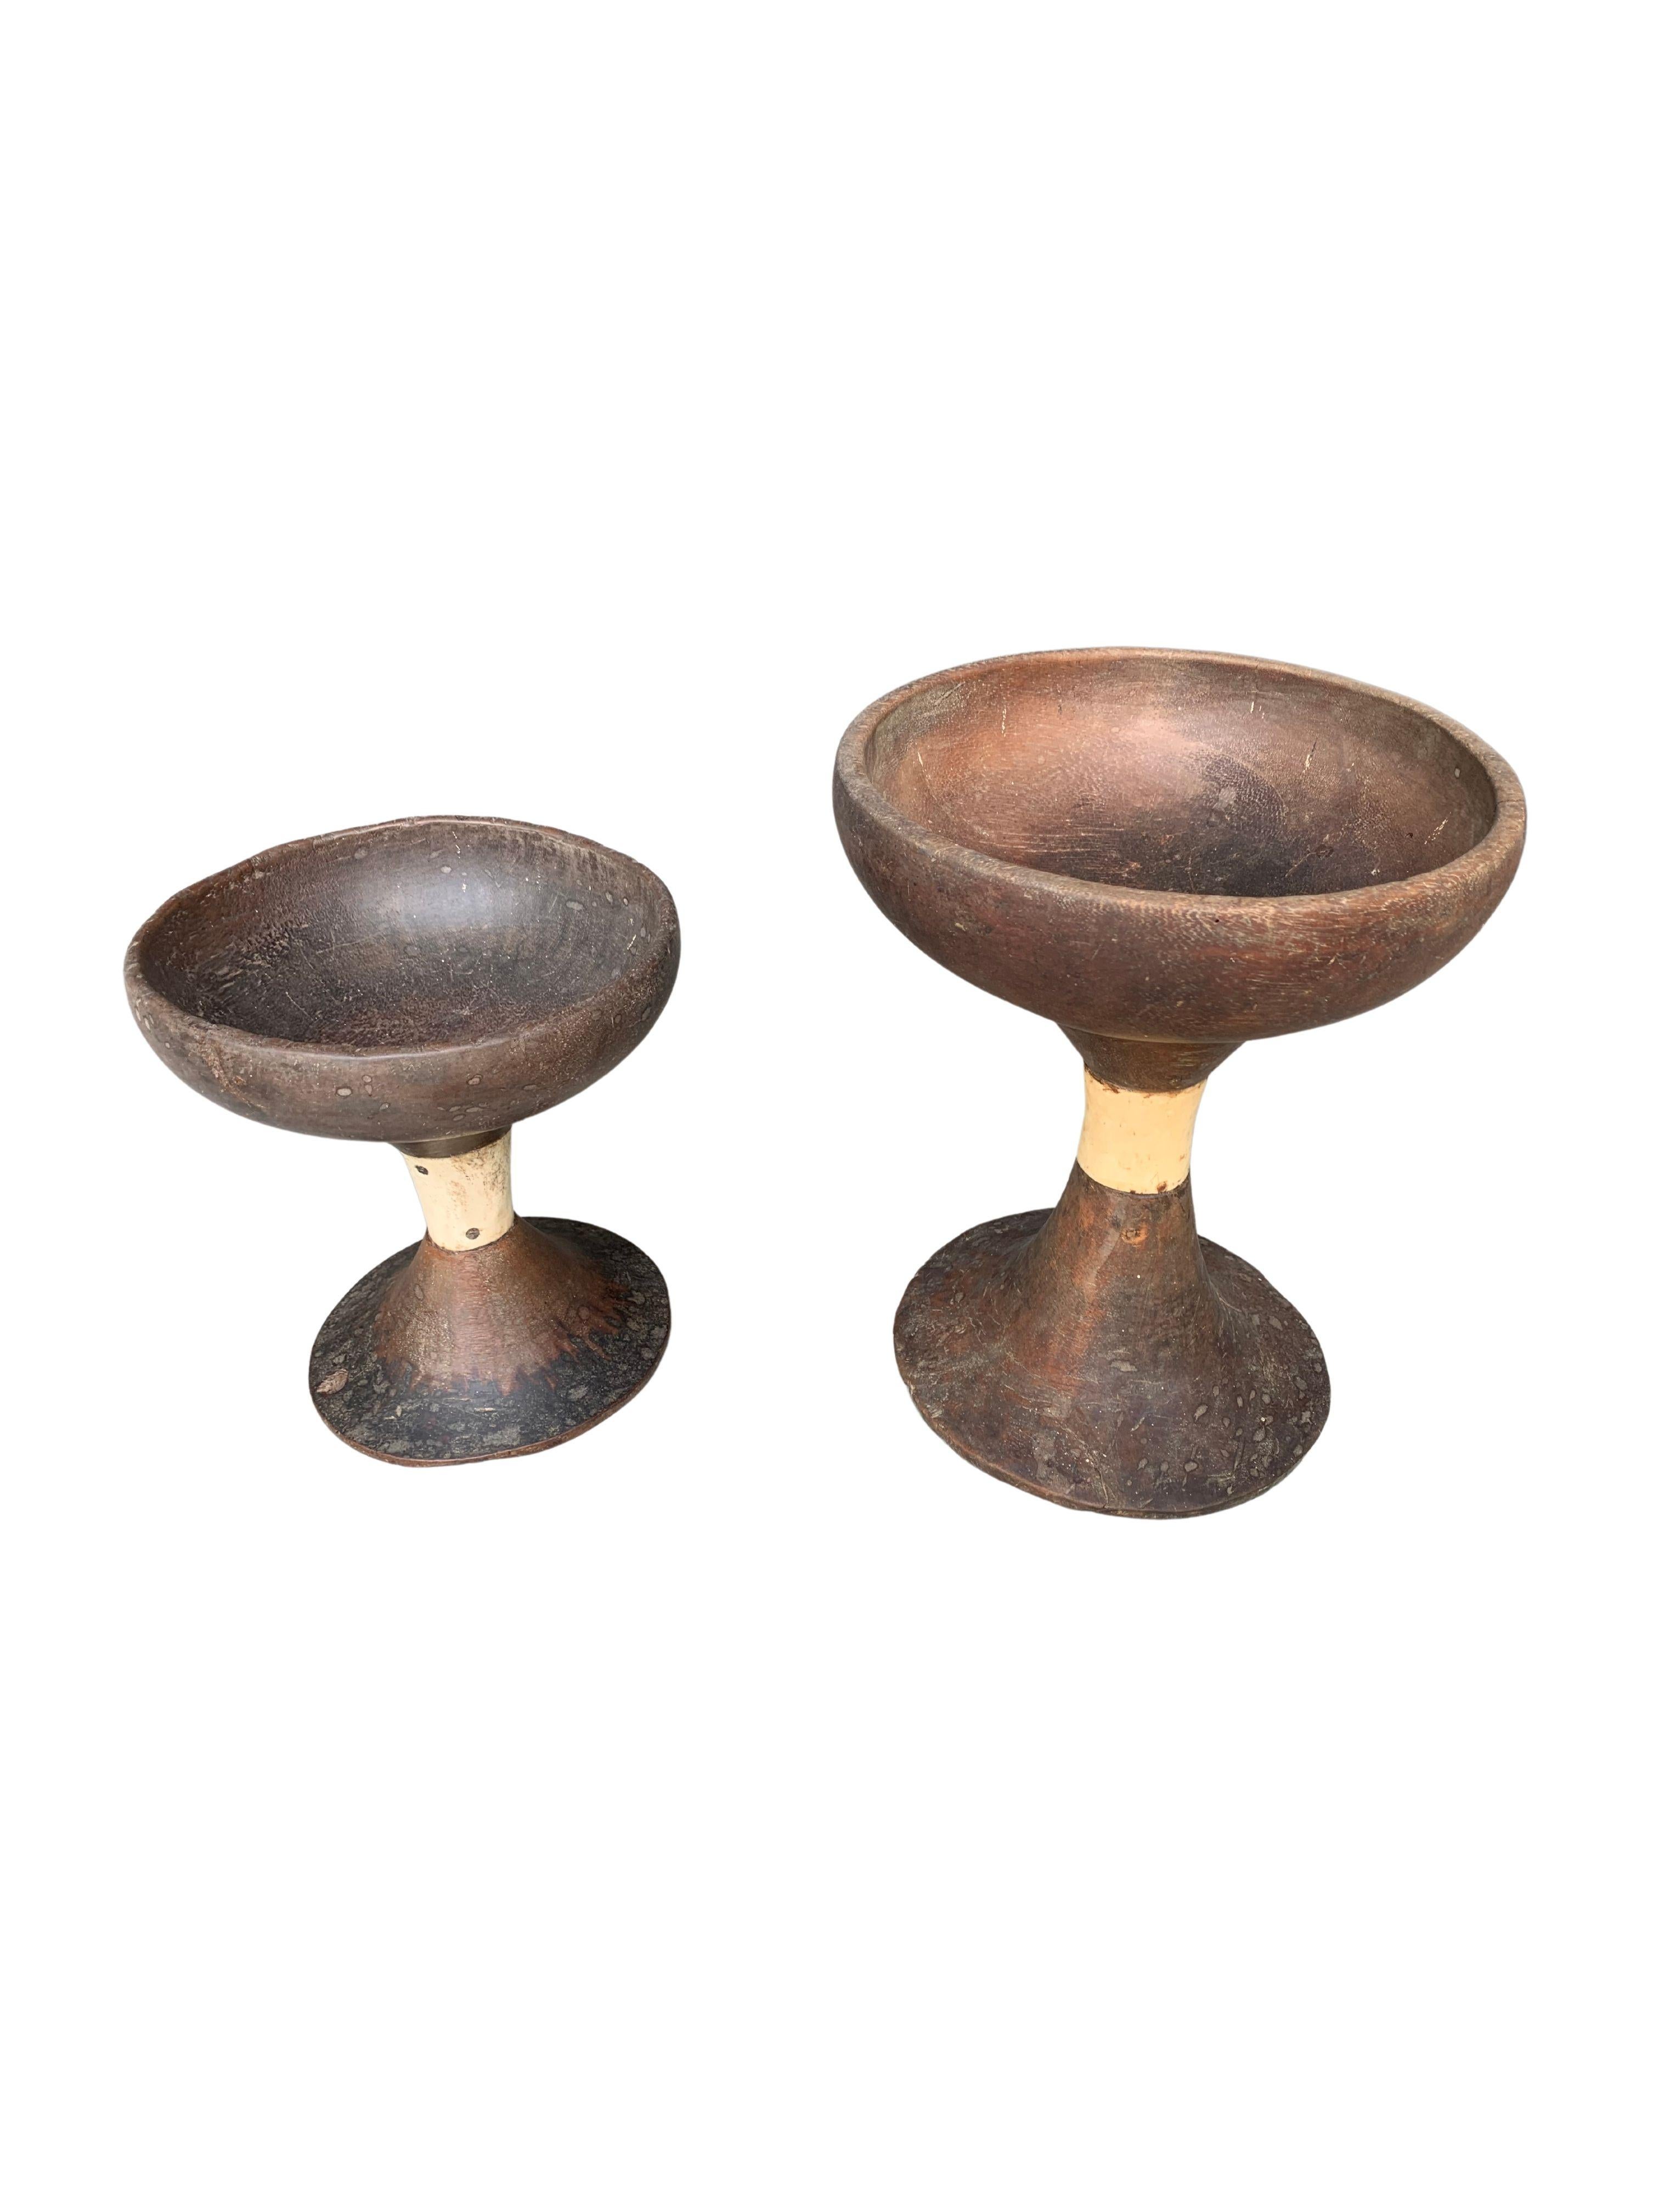 Cet ensemble de bols cérémoniels en bois a été fabriqué par les tribus Toraja sur les hauts plateaux montagneux de Sulawesi, en Indonésie. Ils sont fabriqués à la main à partir de trois éléments distincts (la base, le milieu et la partie supérieure